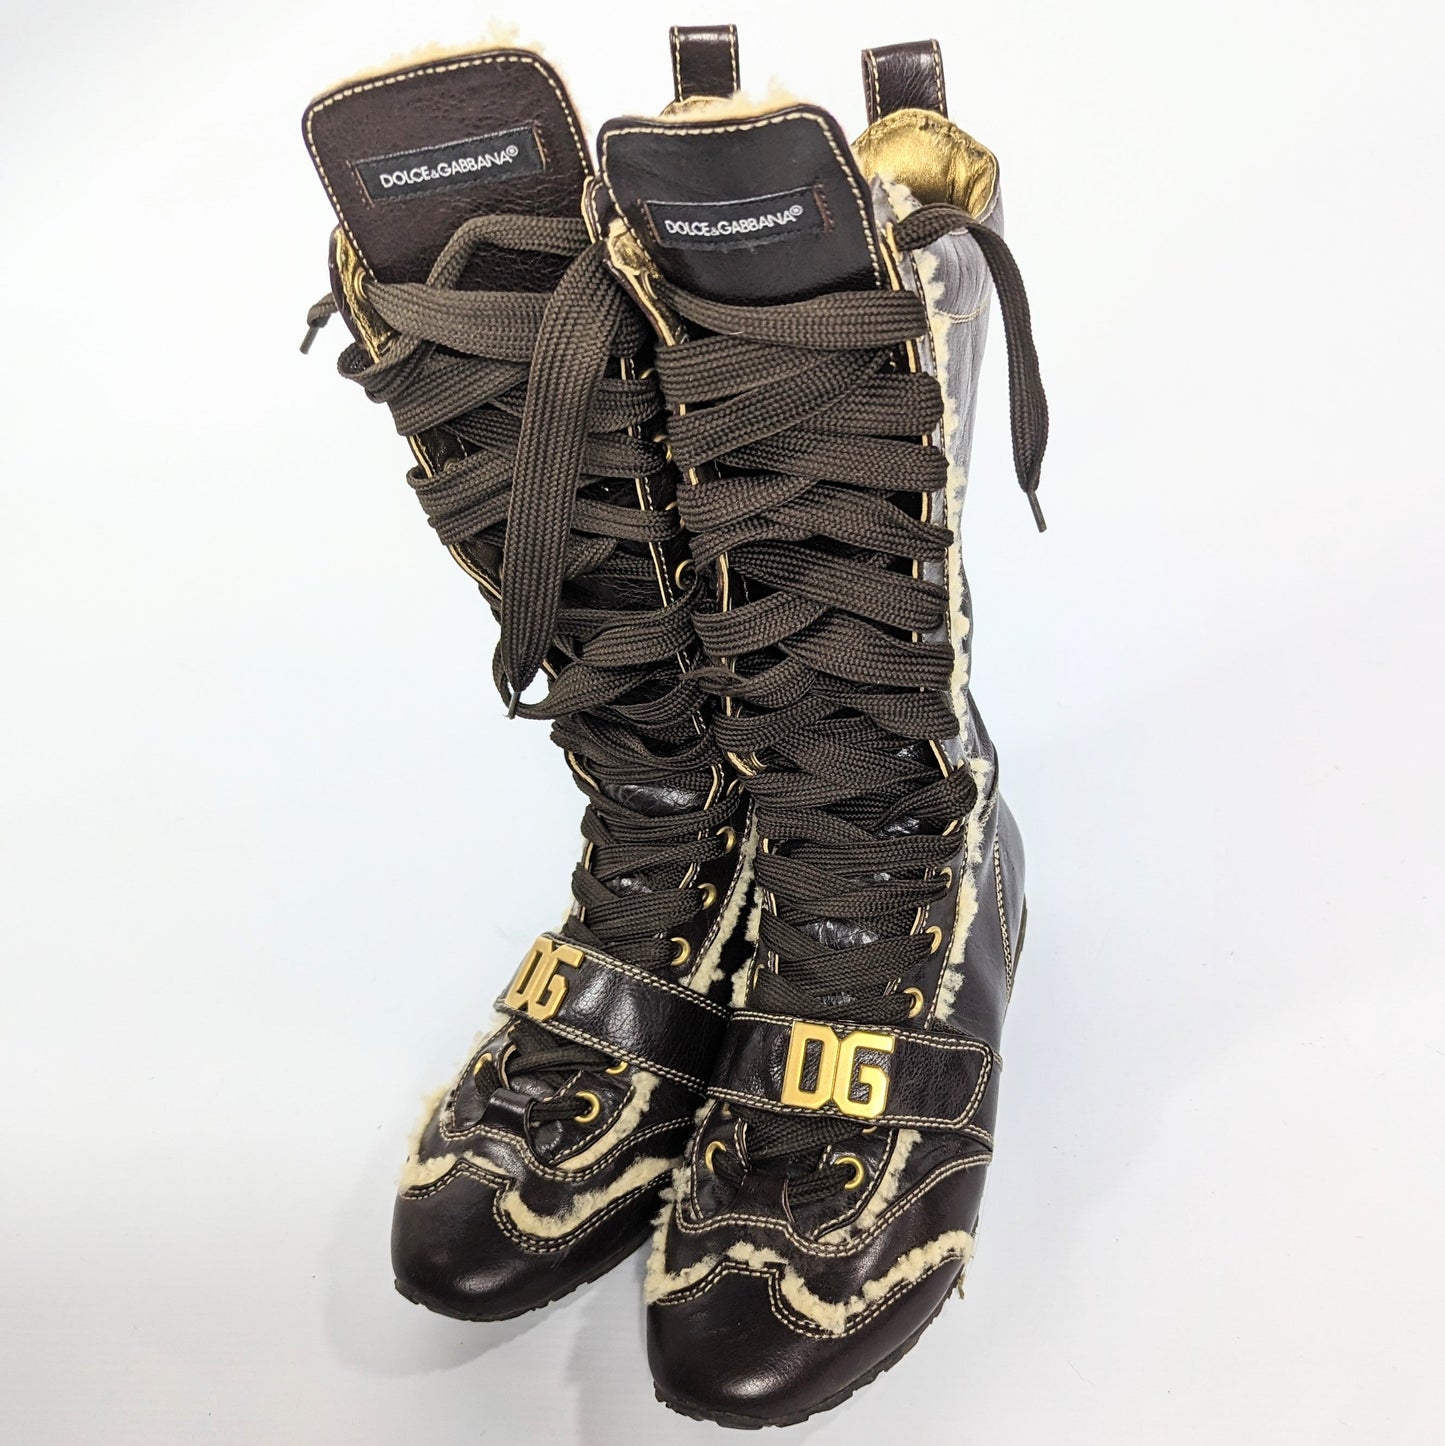 Boots Dolce&Gabbana à lacet - EU38|UK5|US7